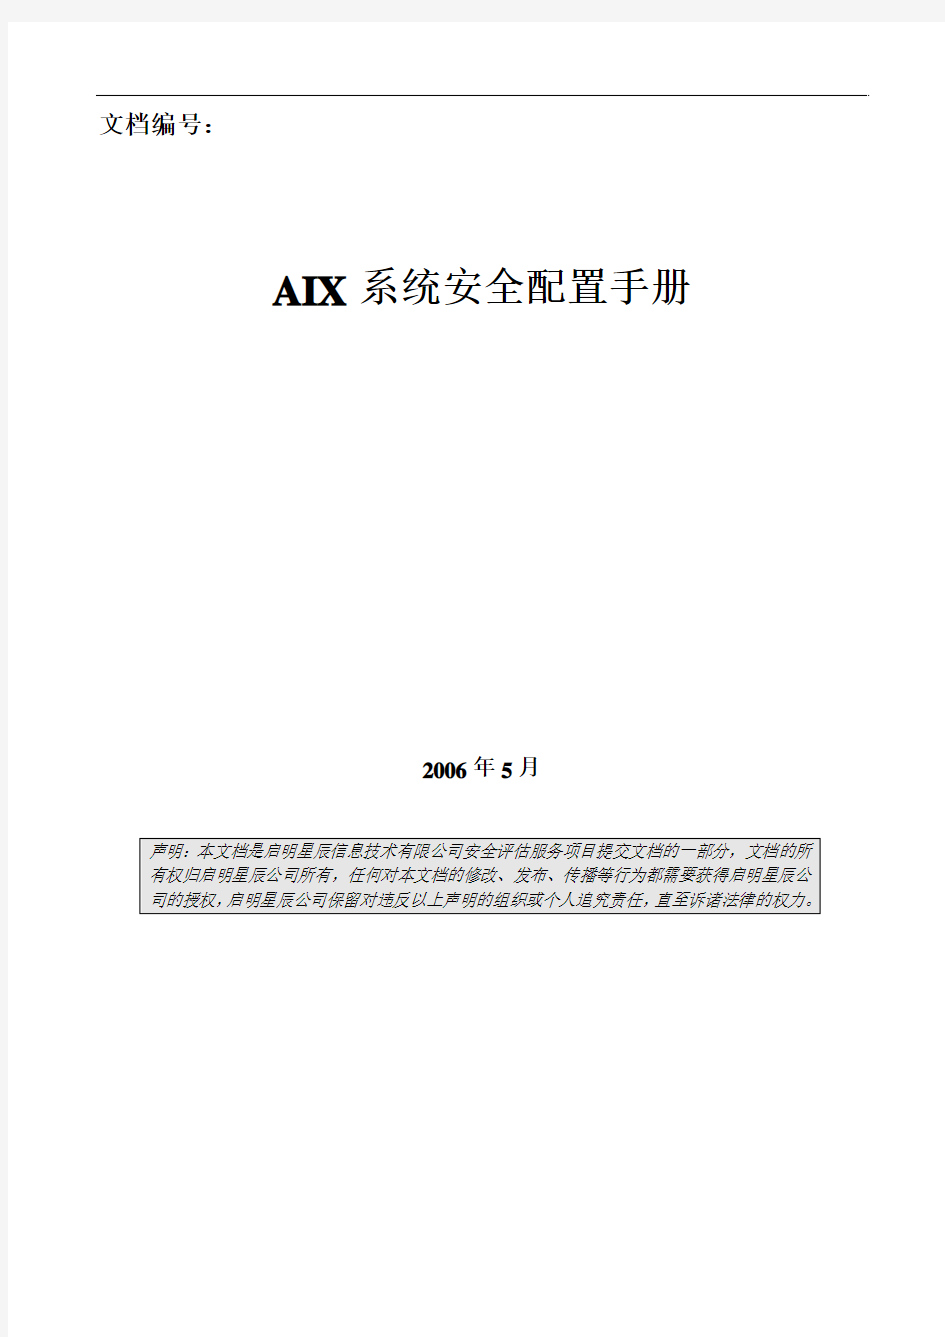 AIX安全配置手册